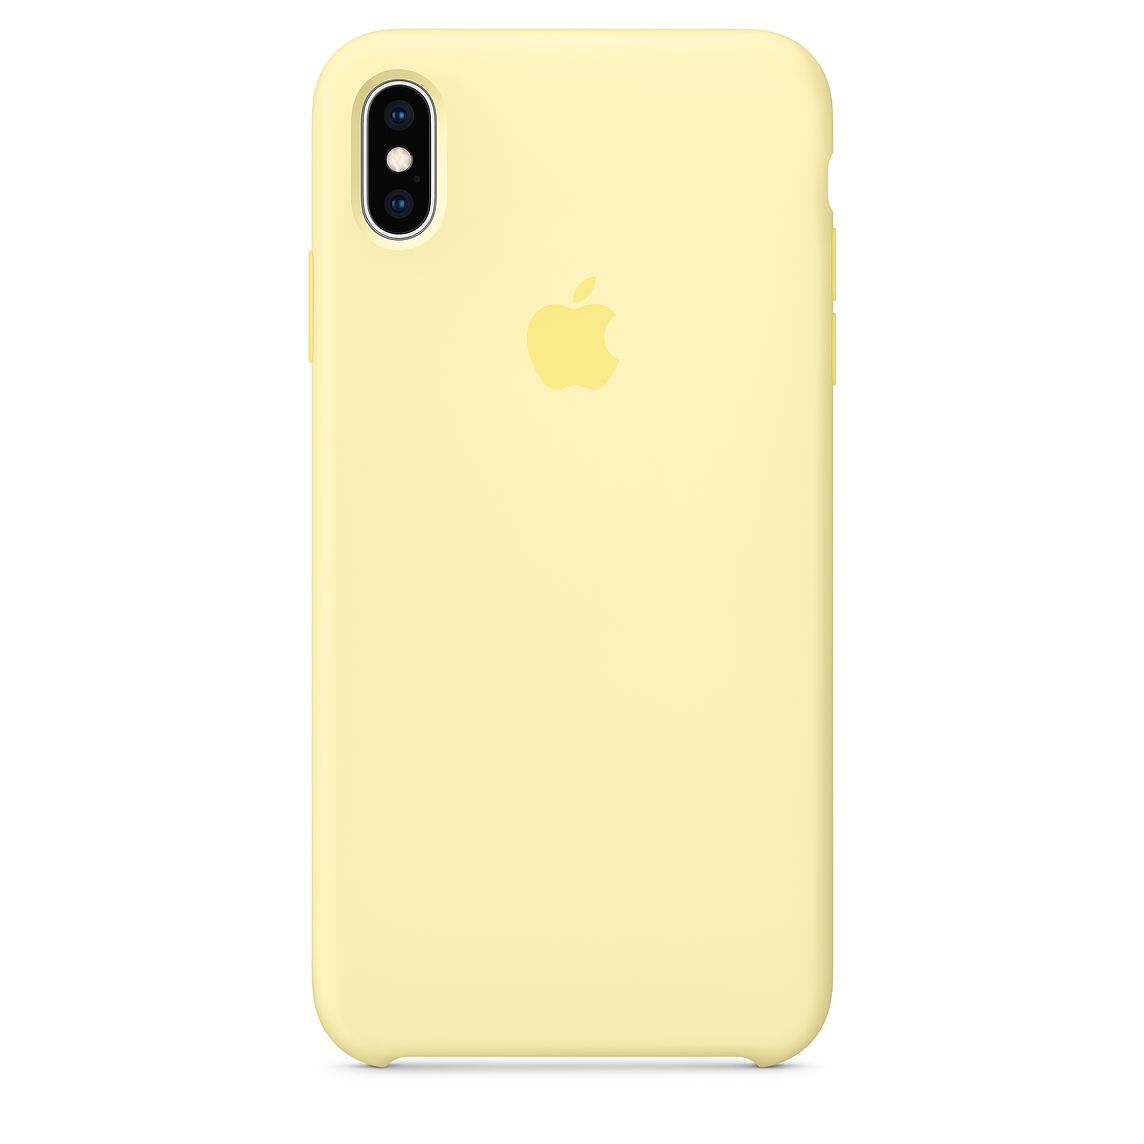 coque iphone xs max jaune apple